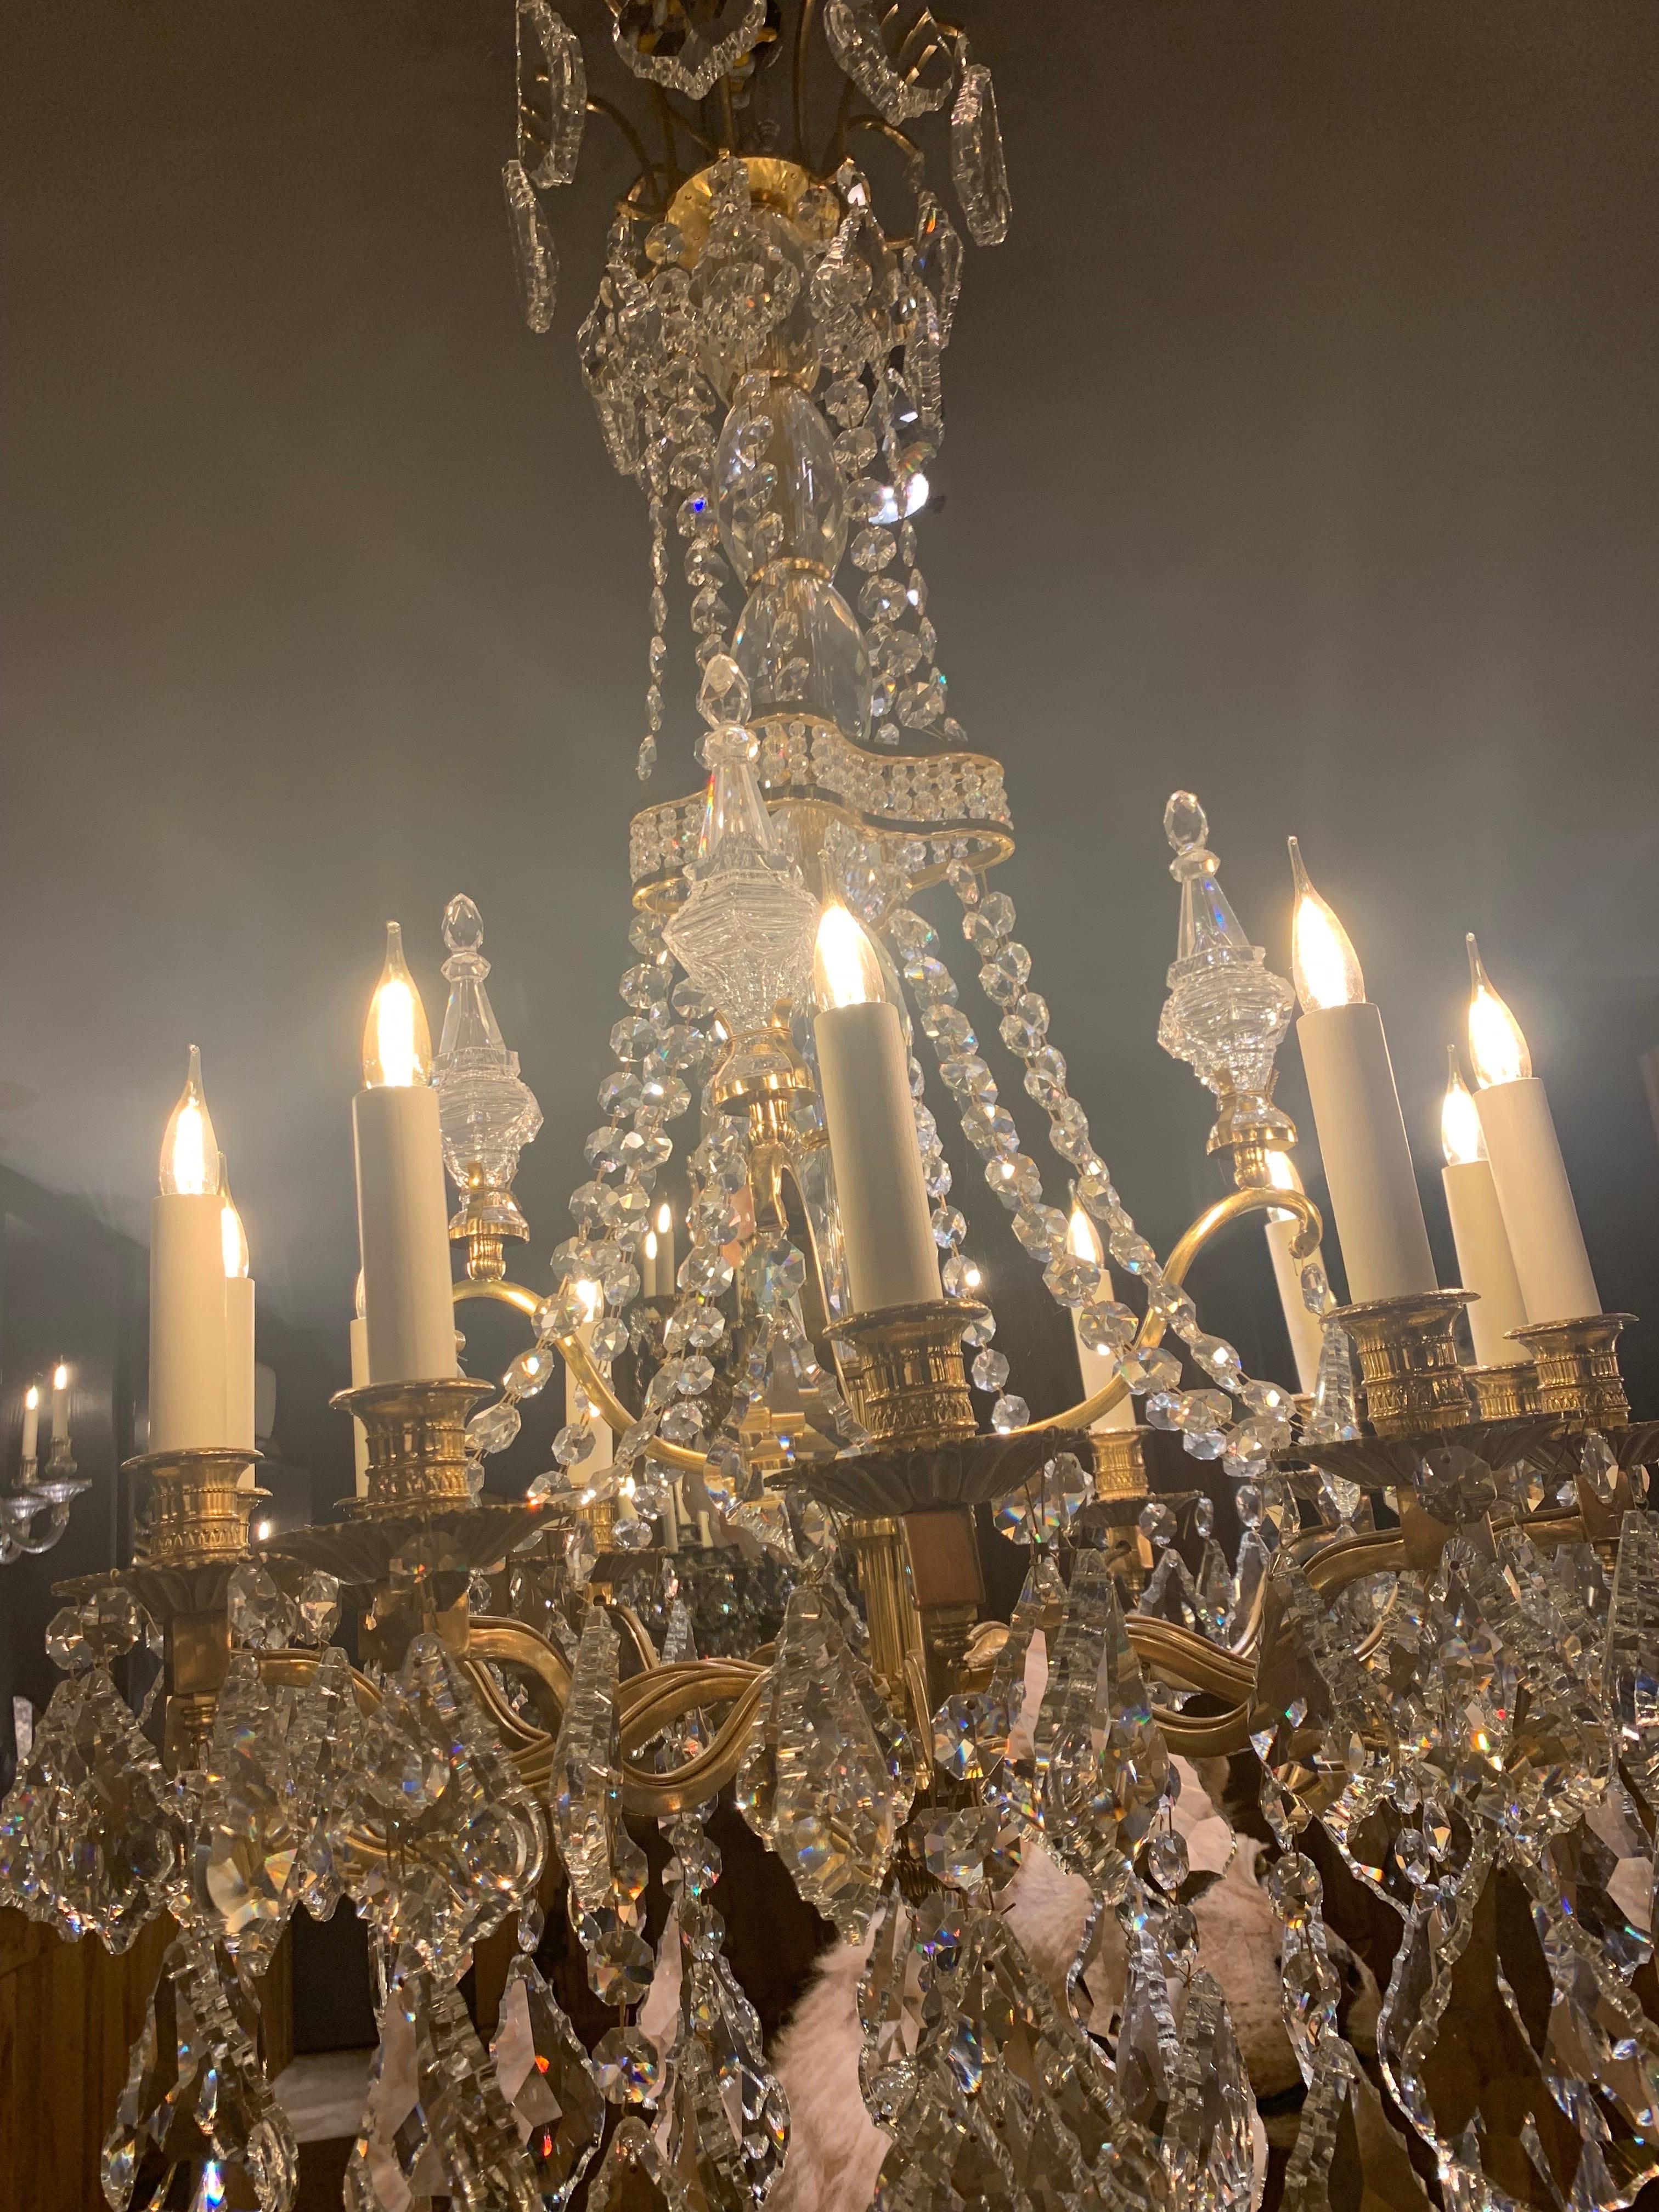 Prächtiger Galeriekronleuchter des Stils louis XIV mit 12 Armen von Lichtern in vergoldeter Bronze 18 Karat. 
Der Kronleuchter ist mit Kristallanhängern und geschliffenen Kristallstücken verziert.

Wir haben einen Kronleuchter auf Lager, aber wir